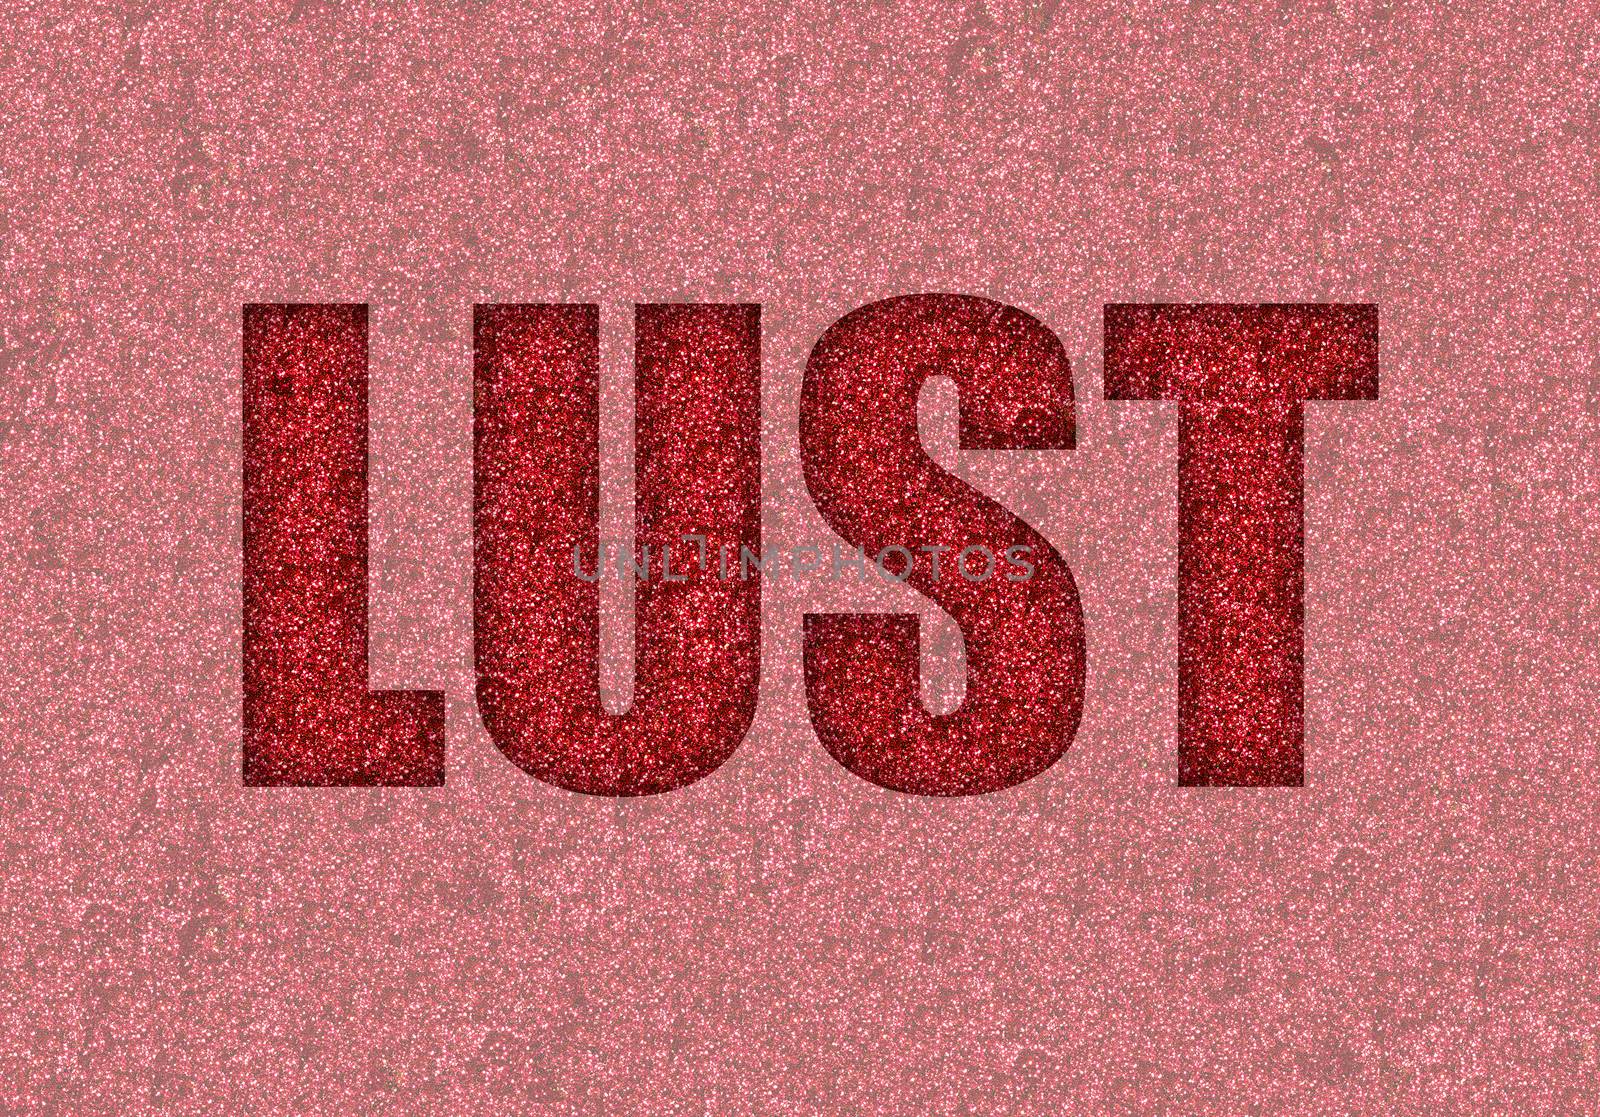 lust by ftlaudgirl